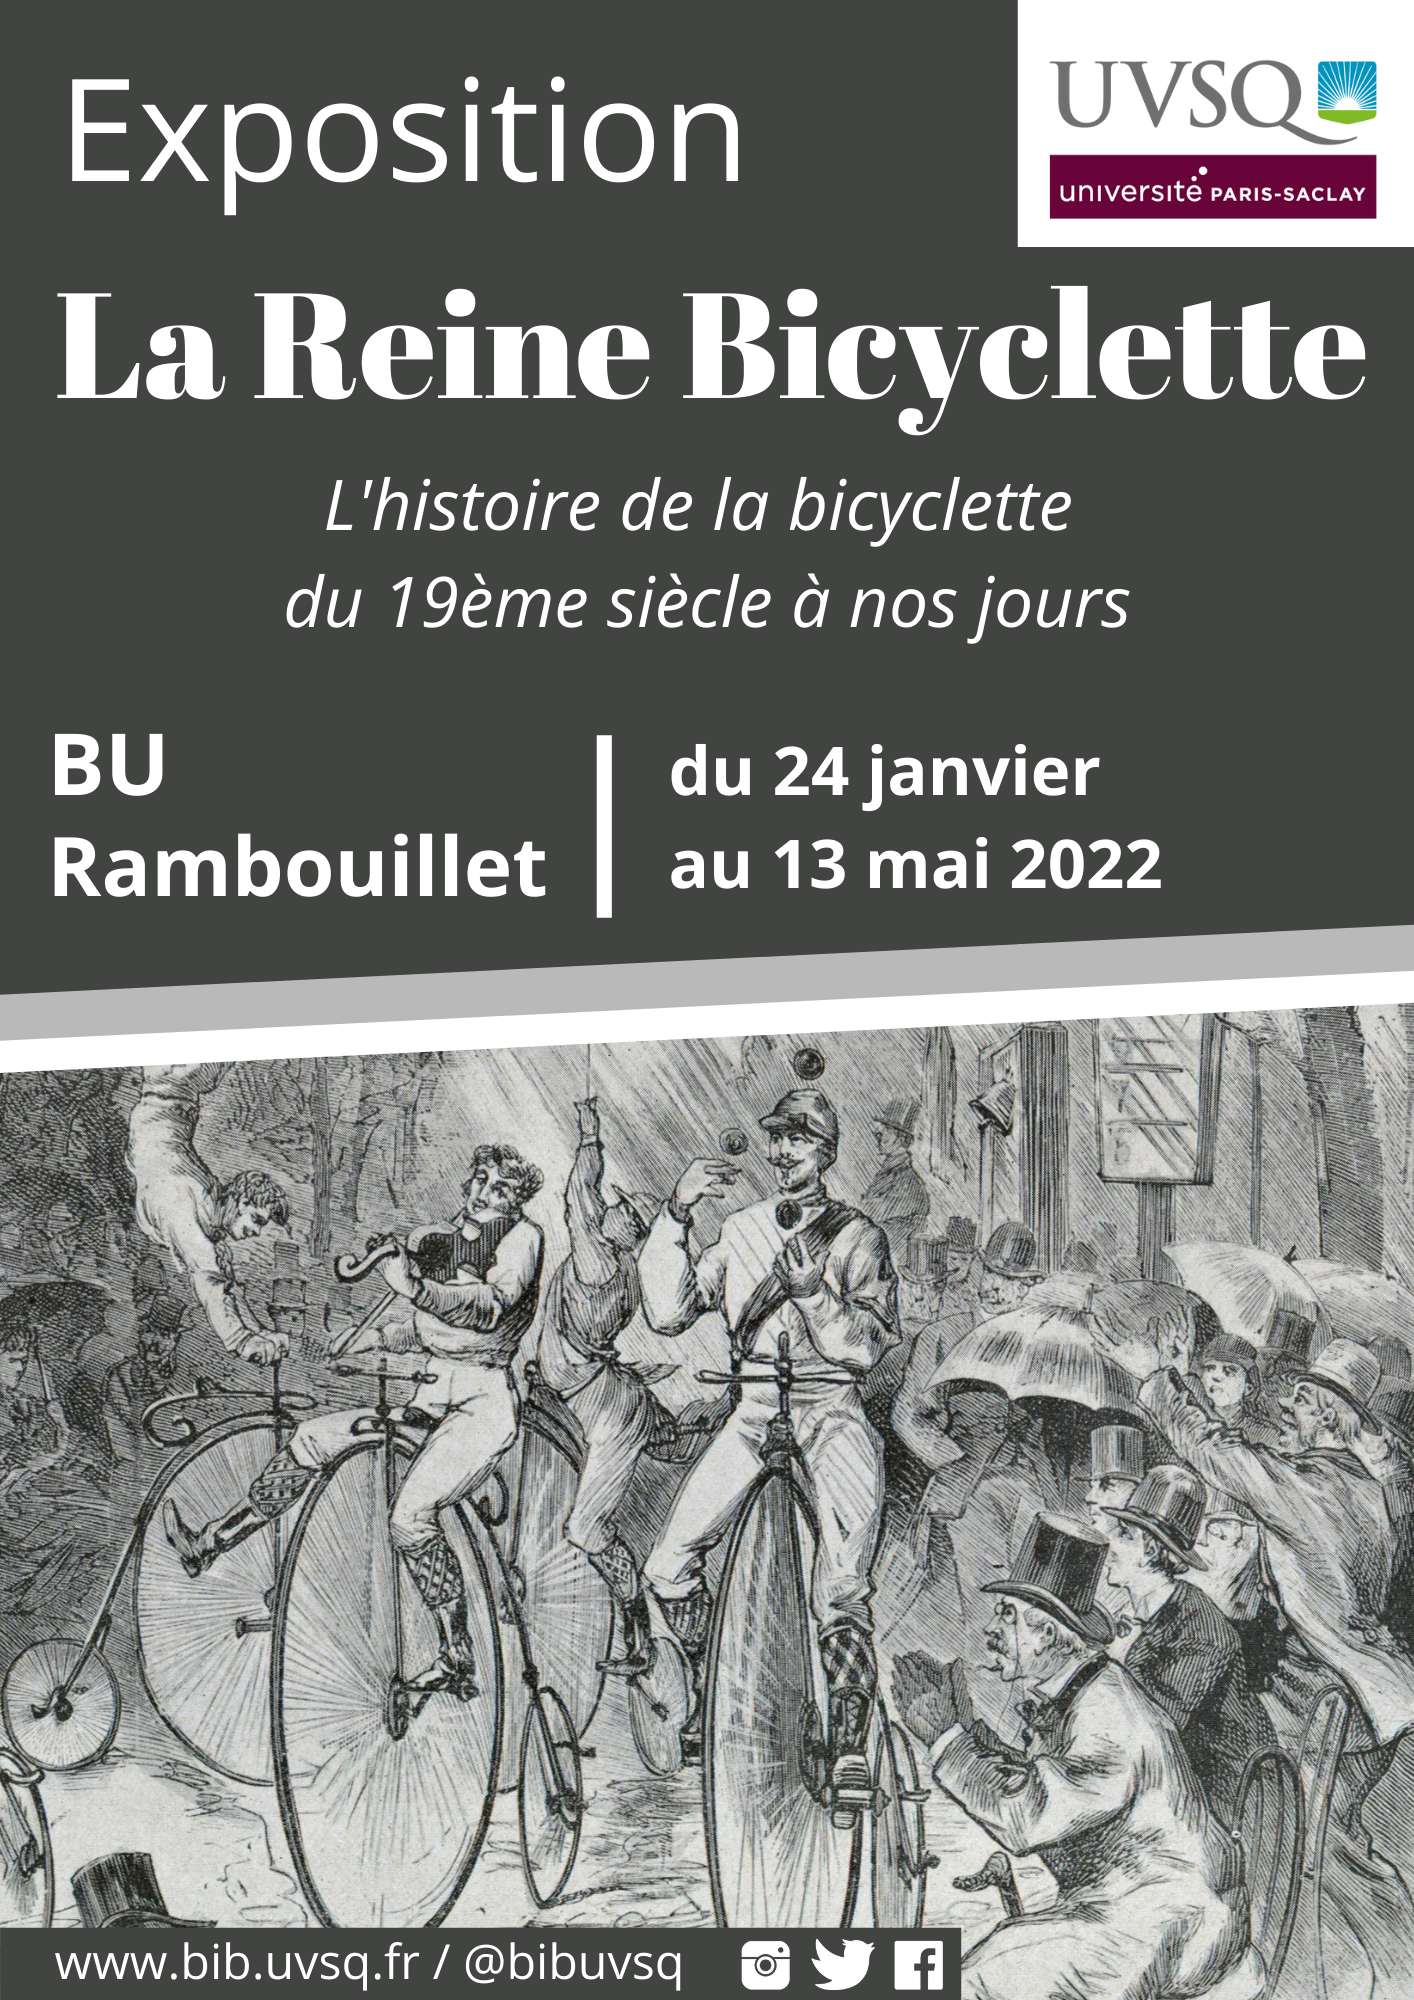 Exposition La reine bicyclette